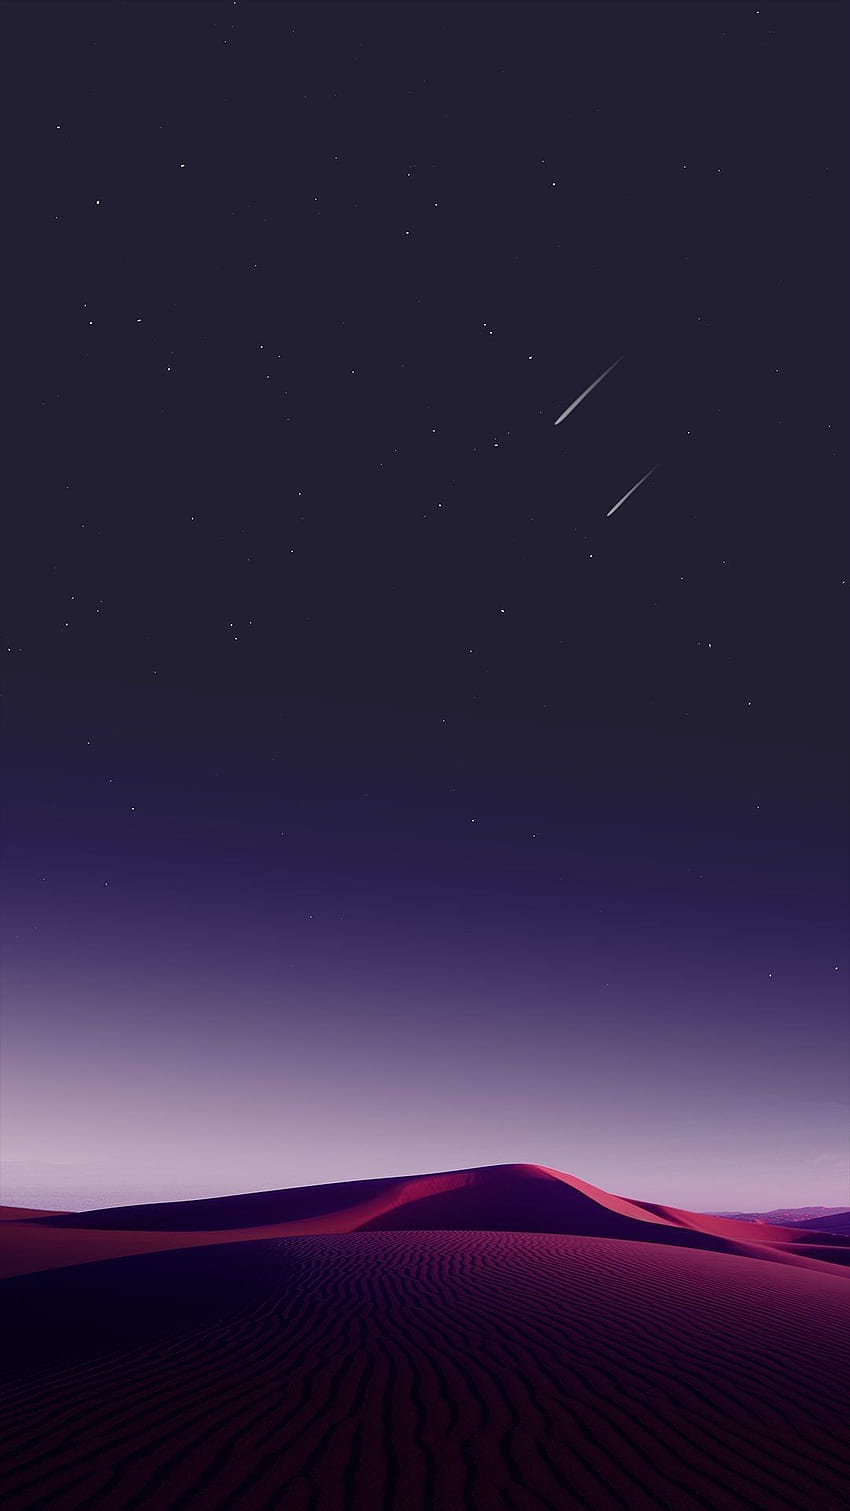 Cielo del desierto Estrellas fugaces IPhone. S8, minimalista, teléfono inteligente, estrellas fugaces moradas fondo de pantalla del teléfono